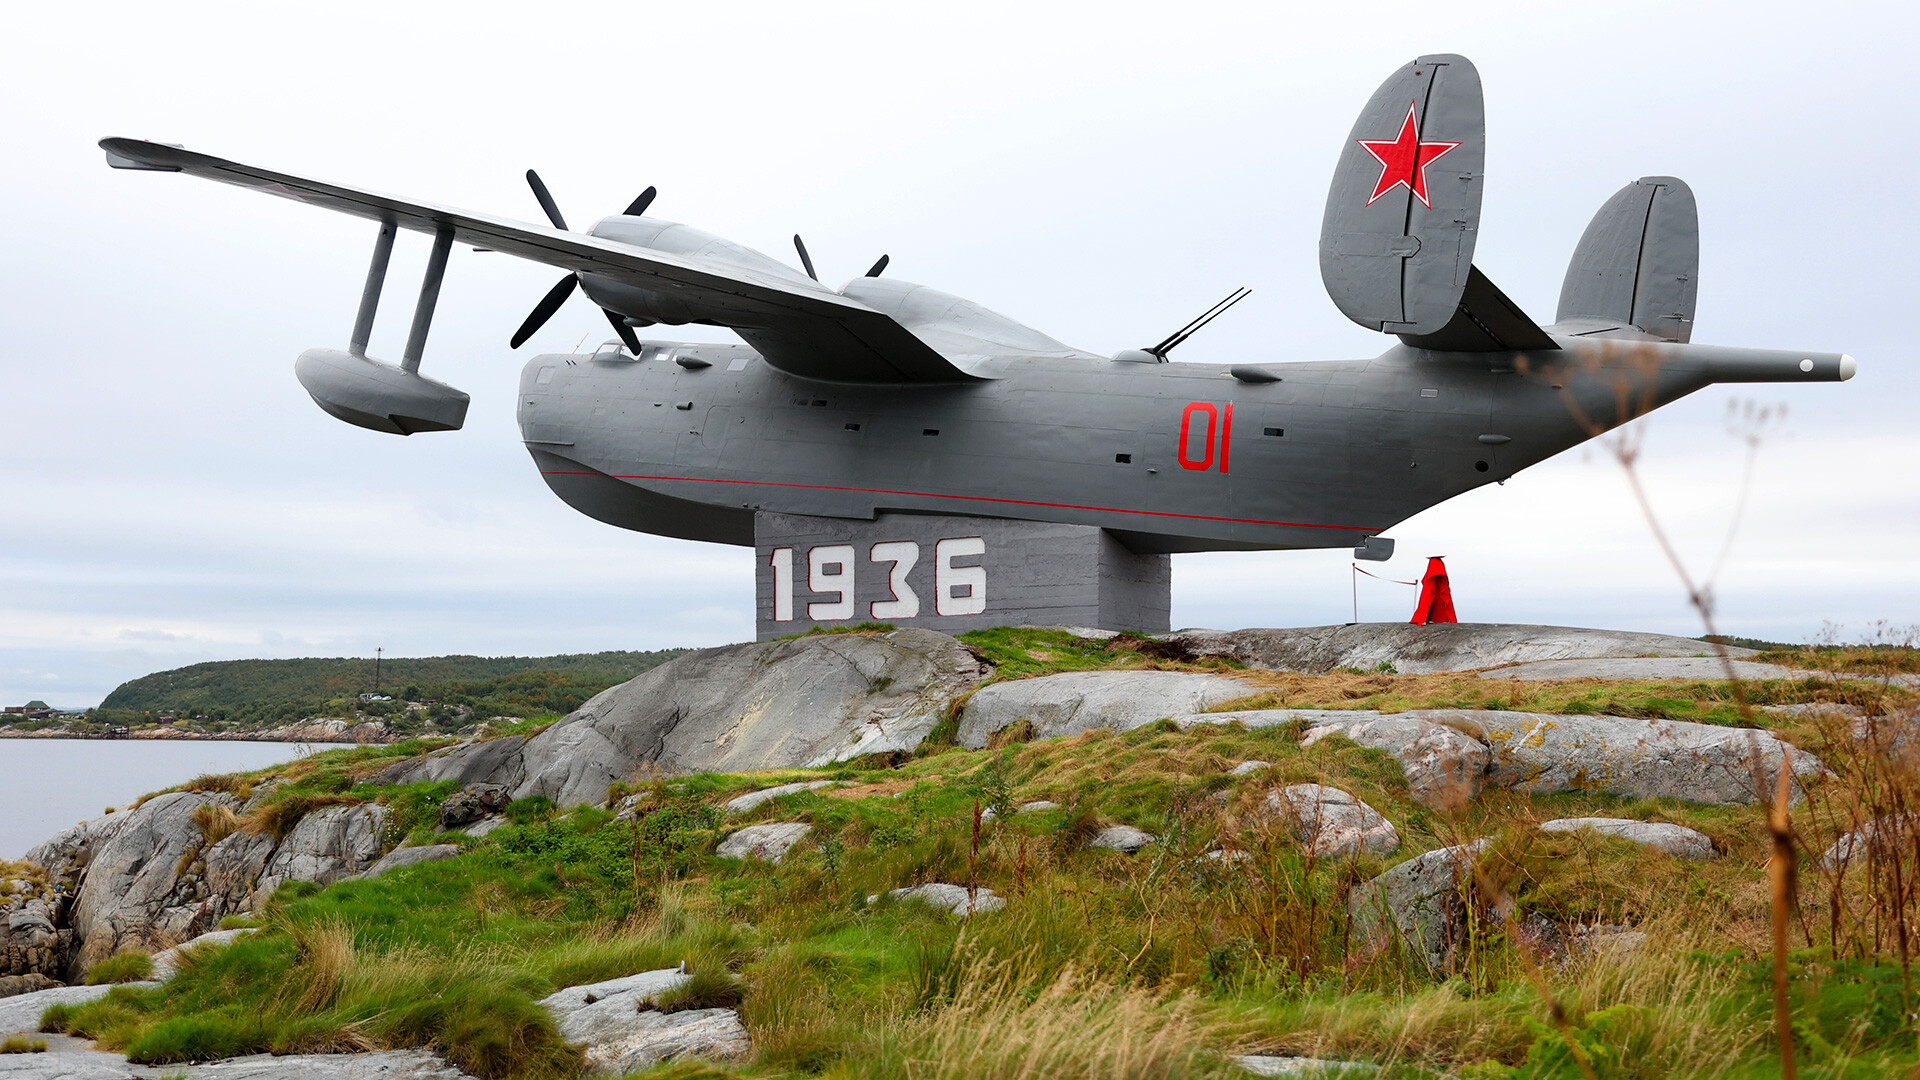 Споменик првим авијатичарима Северне флоте - хидроавион БЕ-6 ПЛО, откривен је после реконструкције на острву Бољшој Грјазни у Колском заливу Мурманске области.